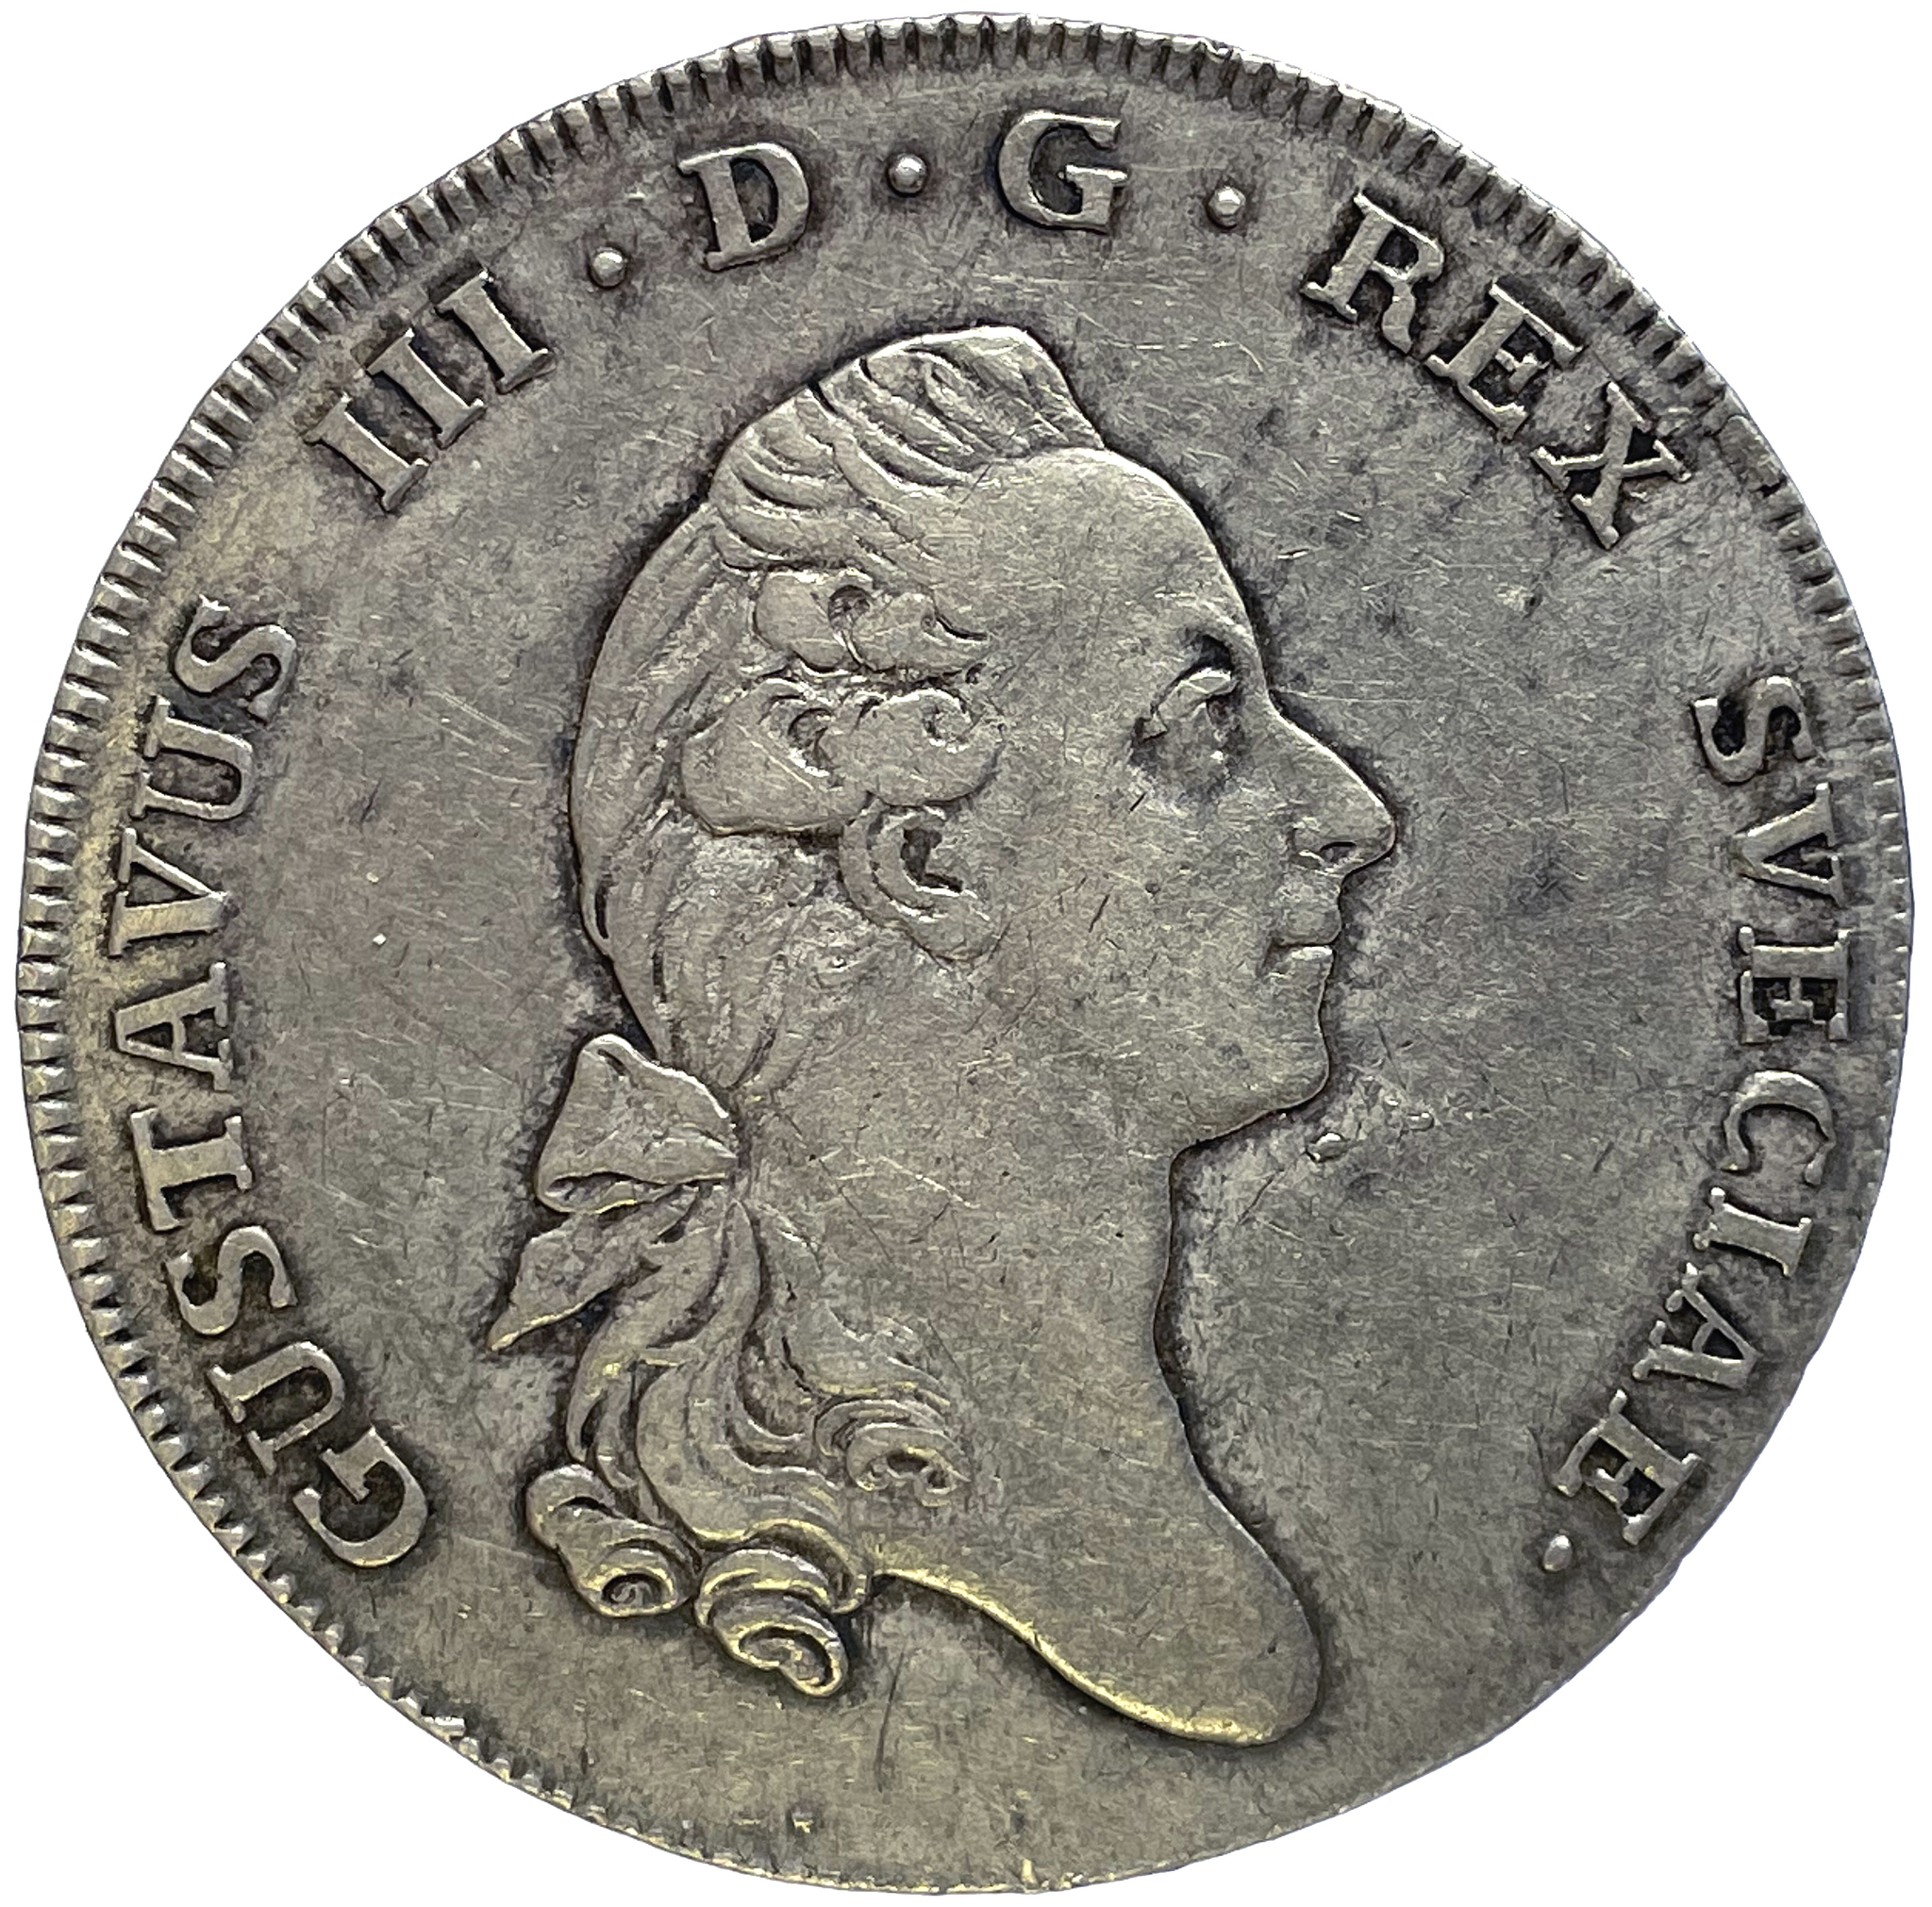 Gustav III, Riksdaler 1776 med litet kors